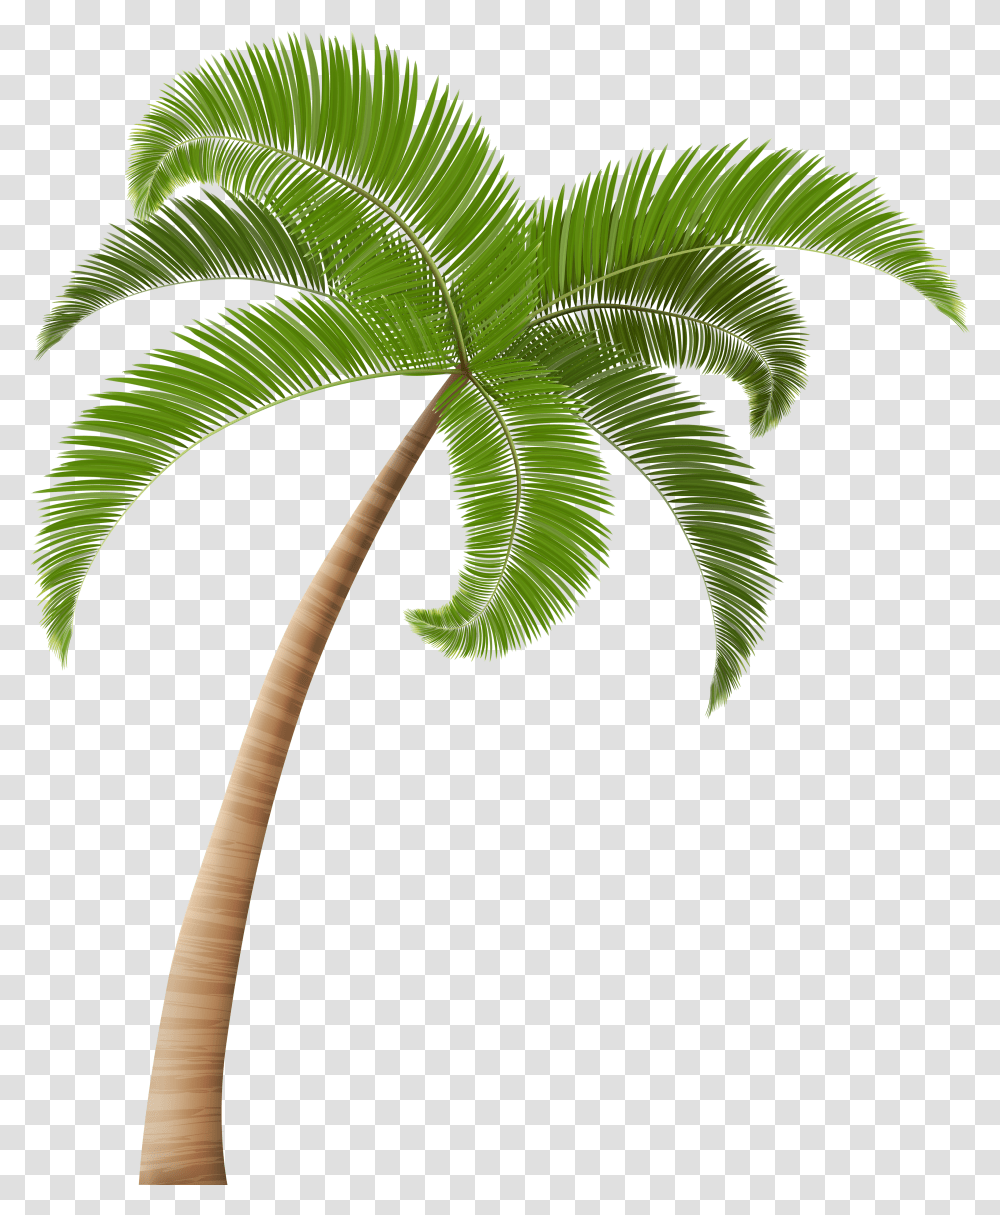 Palm Trees Clip Art Palm Clip Art Image Coconut Tree Transparent Png